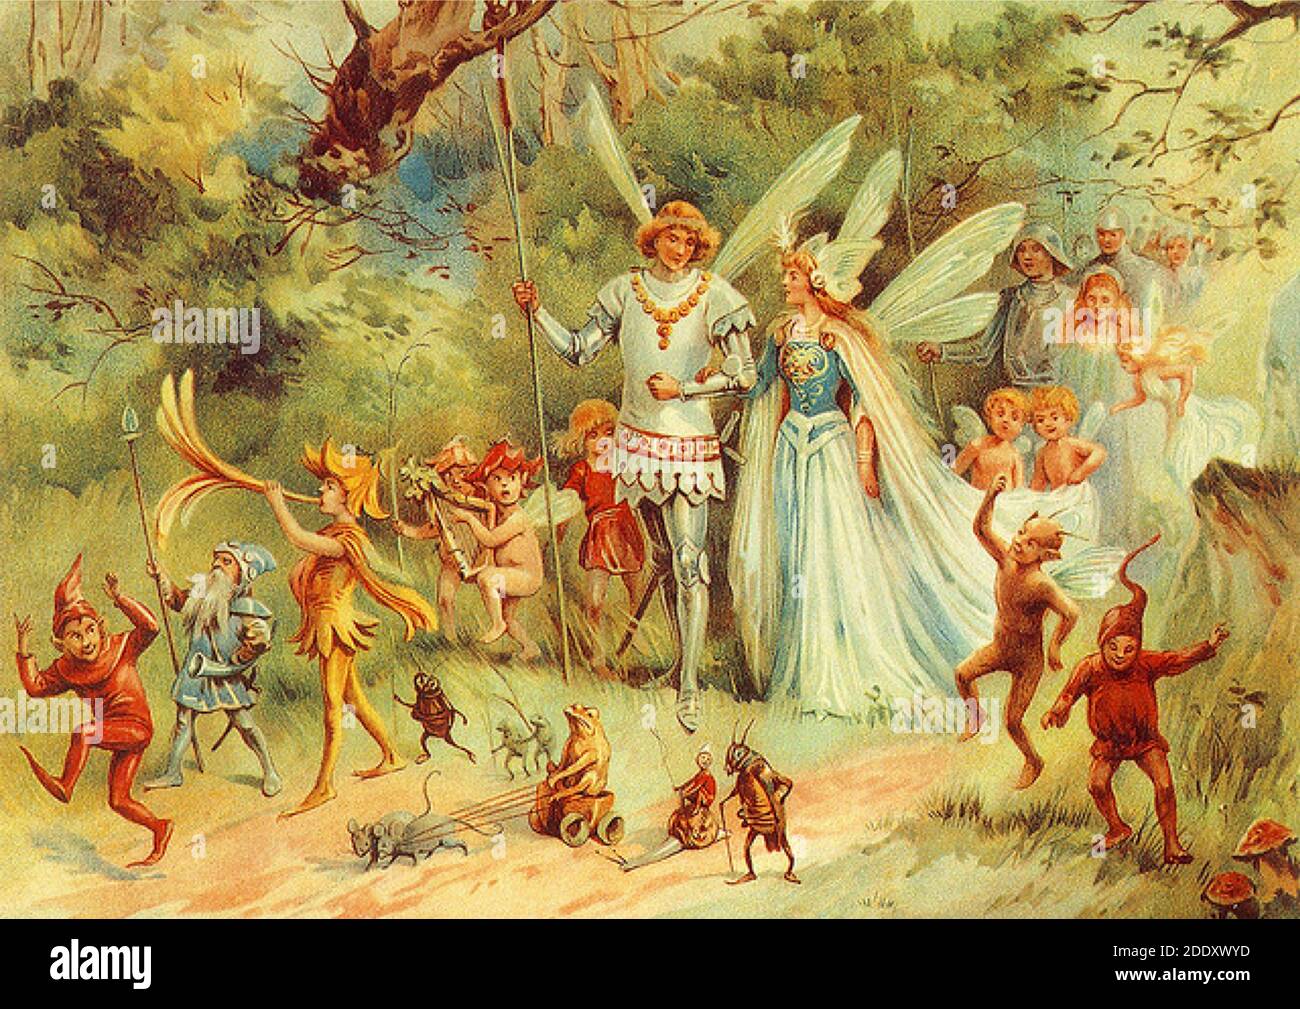 El rey de hadas y la reina caminan por el bosque acompañado por su entorno de criaturas del bosque. Una pintura de hadas de artista desconocido. Foto de stock